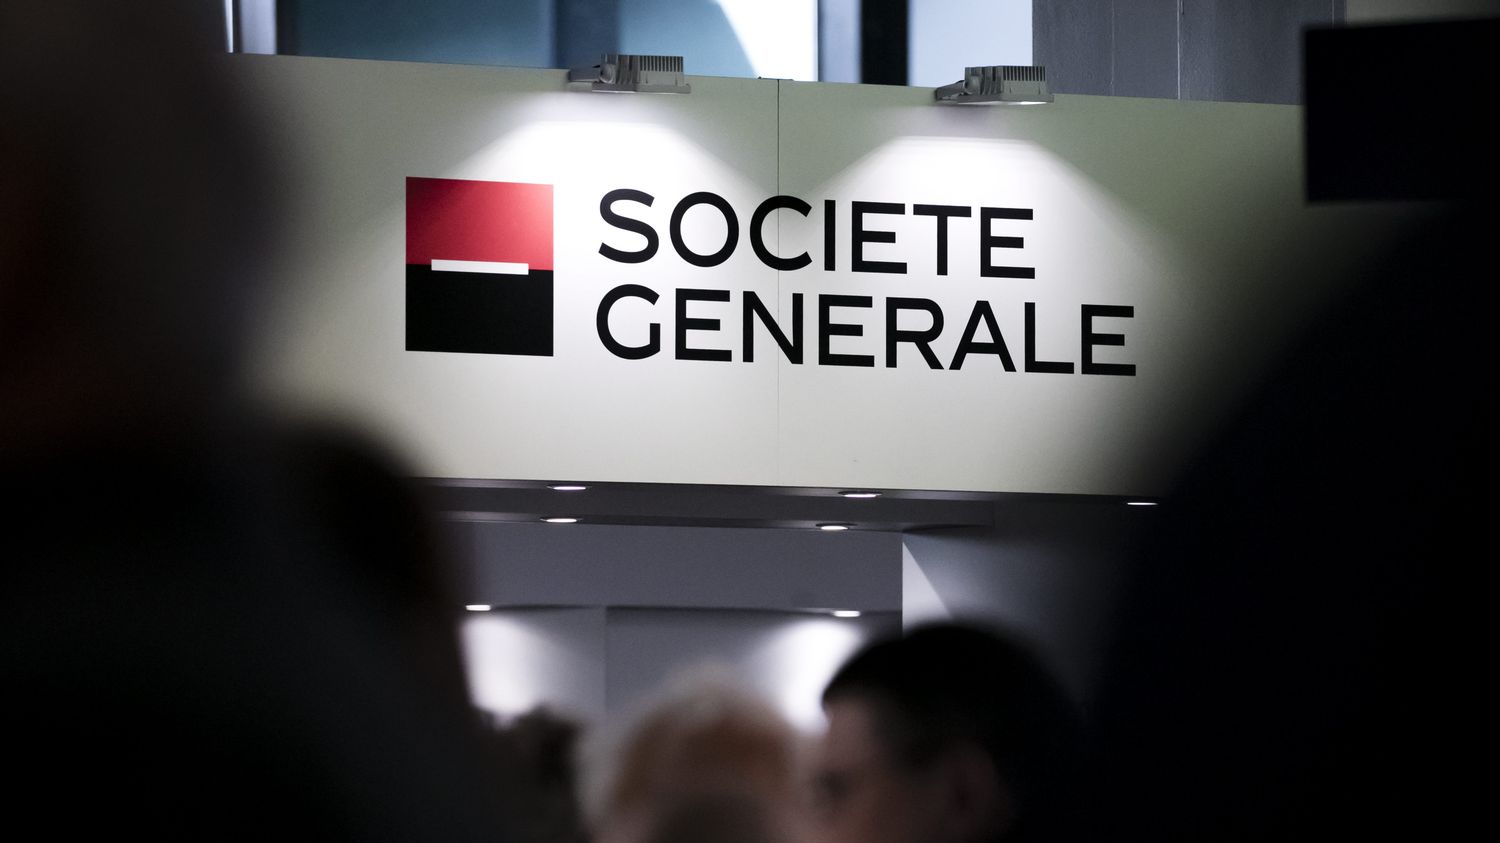 Le groupe Société Générale vient officiellement de céder sa filiale marocaine à Saham.